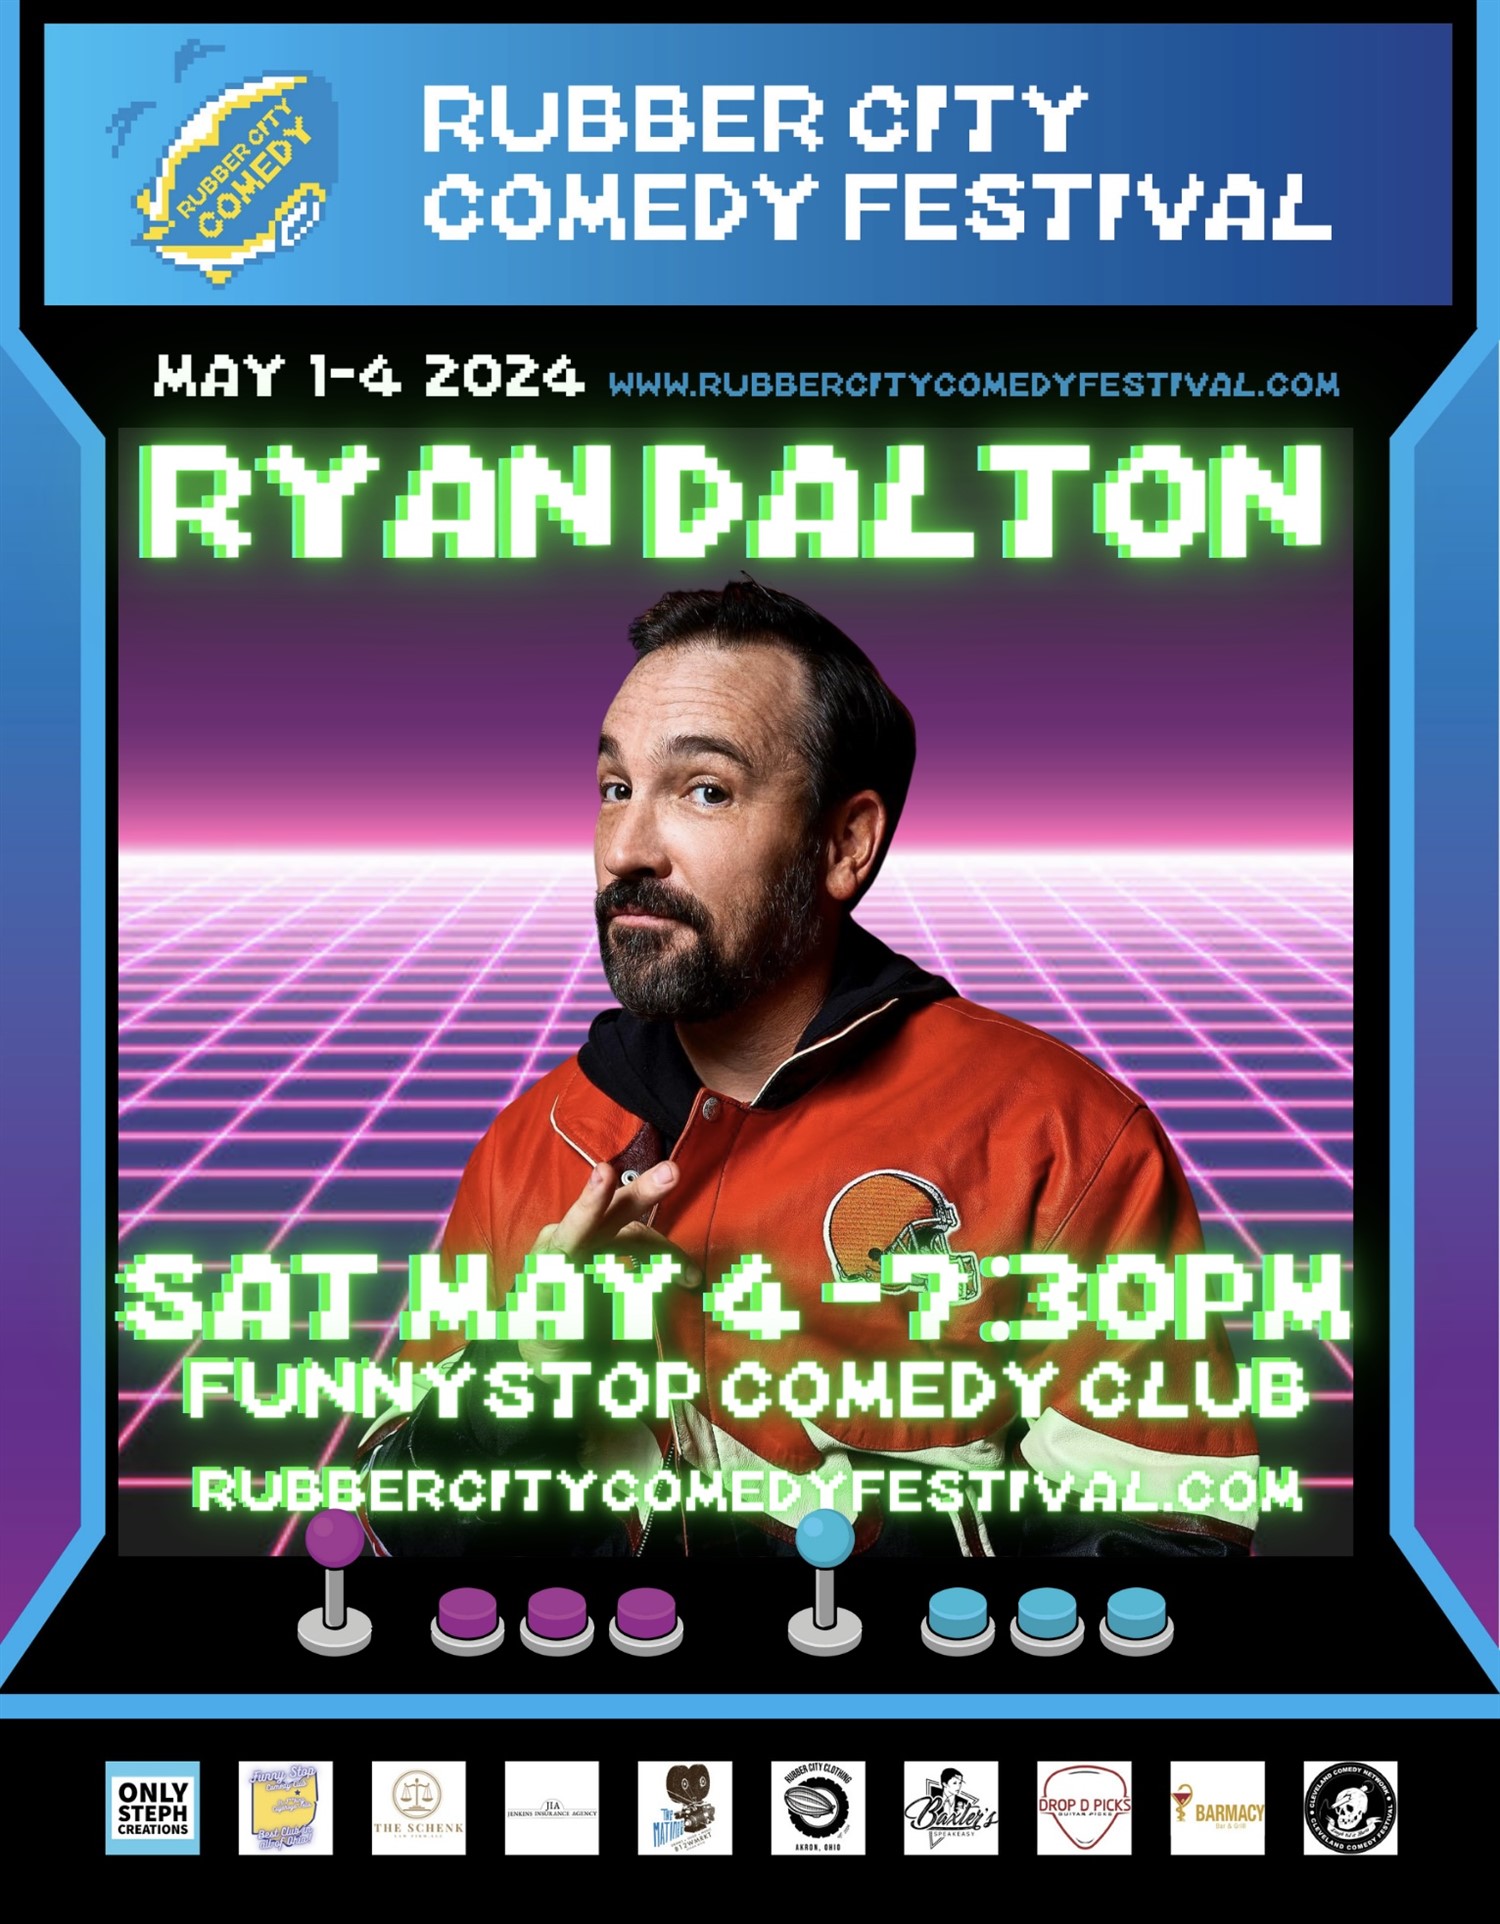 Ryan Dalton | 7:30 PM | Rubber City Comedy Festival Funny Stop Comedy Club on may. 04, 19:30@Funny Stop Comedy Club - Compra entradas y obtén información enFunny Stop funnystop.online